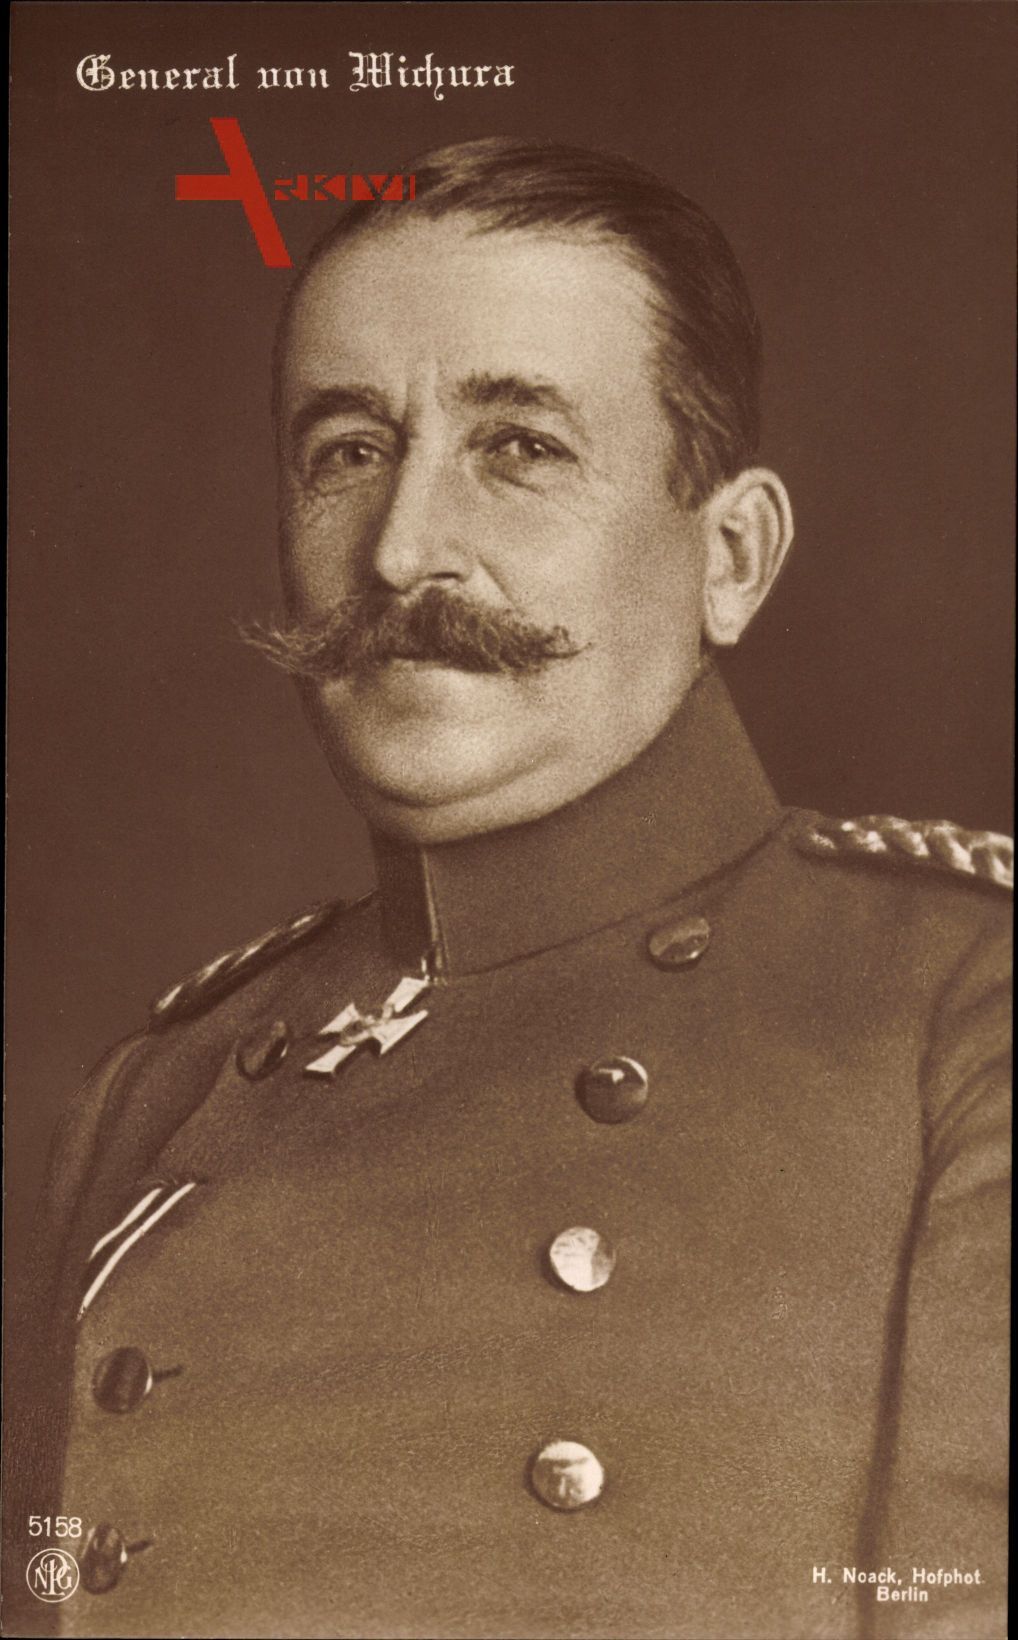 General Georg von Wichura, Kaiserreich, NPG 5158